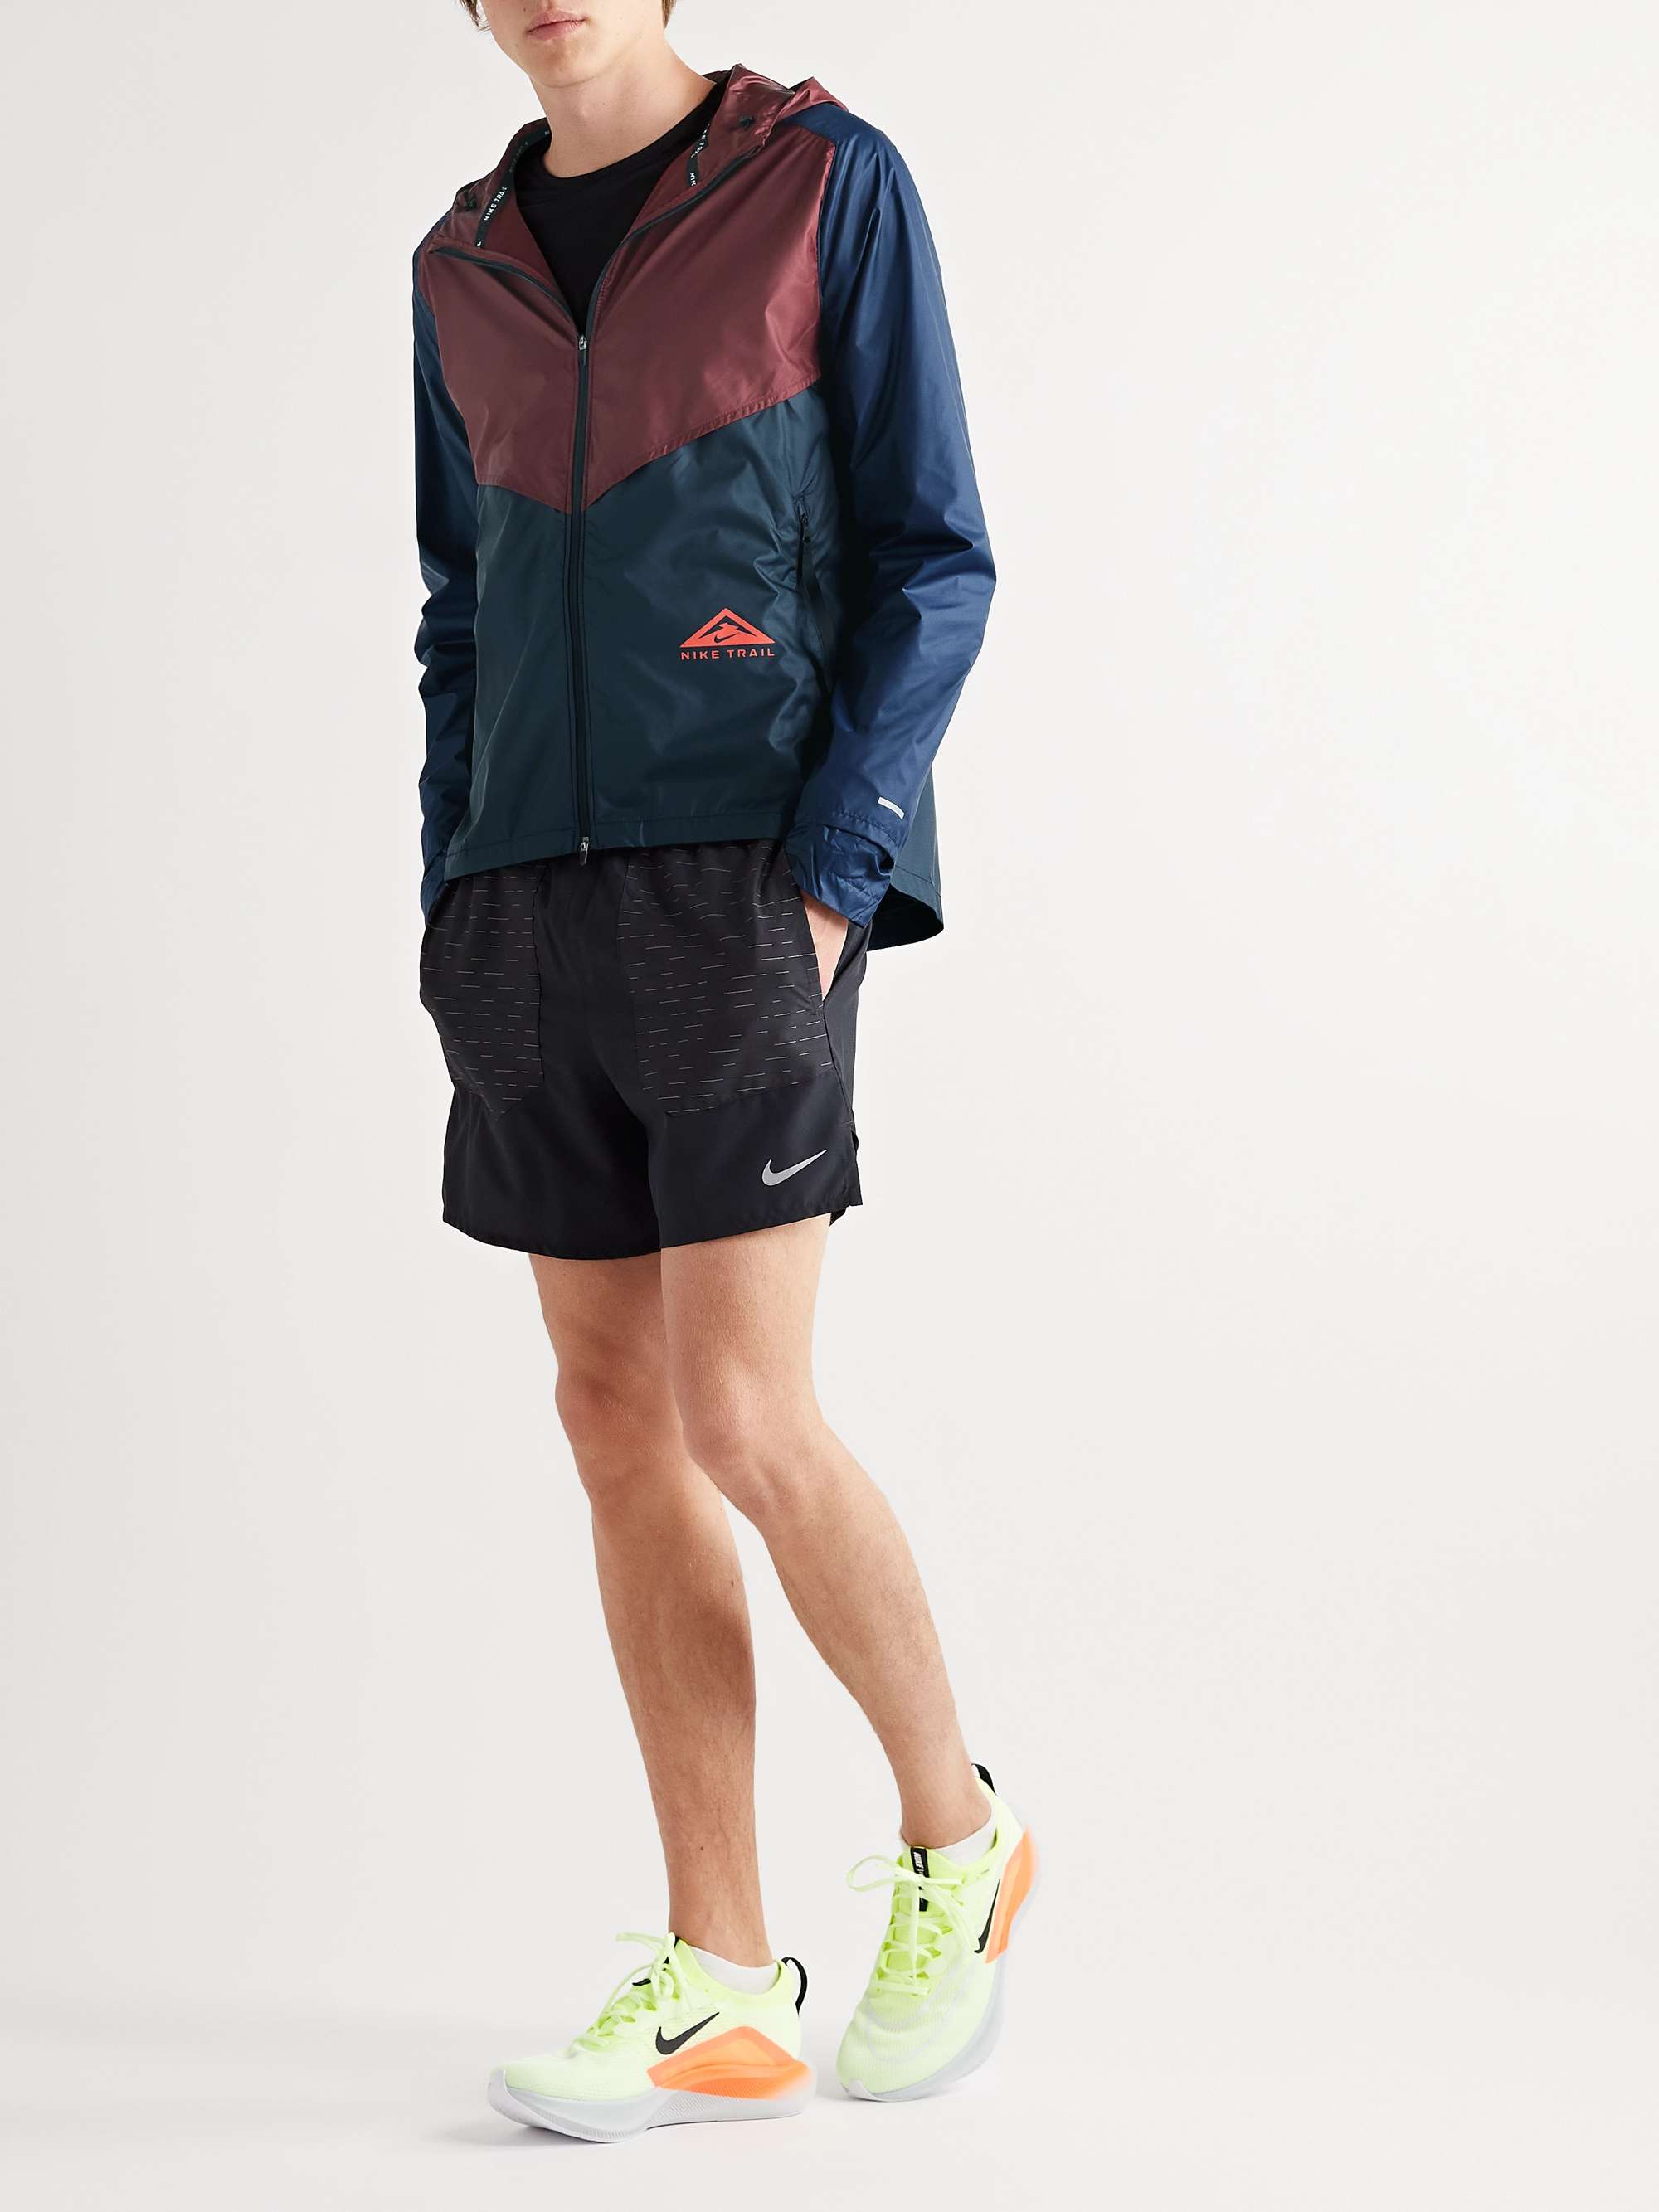 NIKE RUNNING Windrunner Hooded Two-Tone Ripstop Jacket for Men | MR PORTER